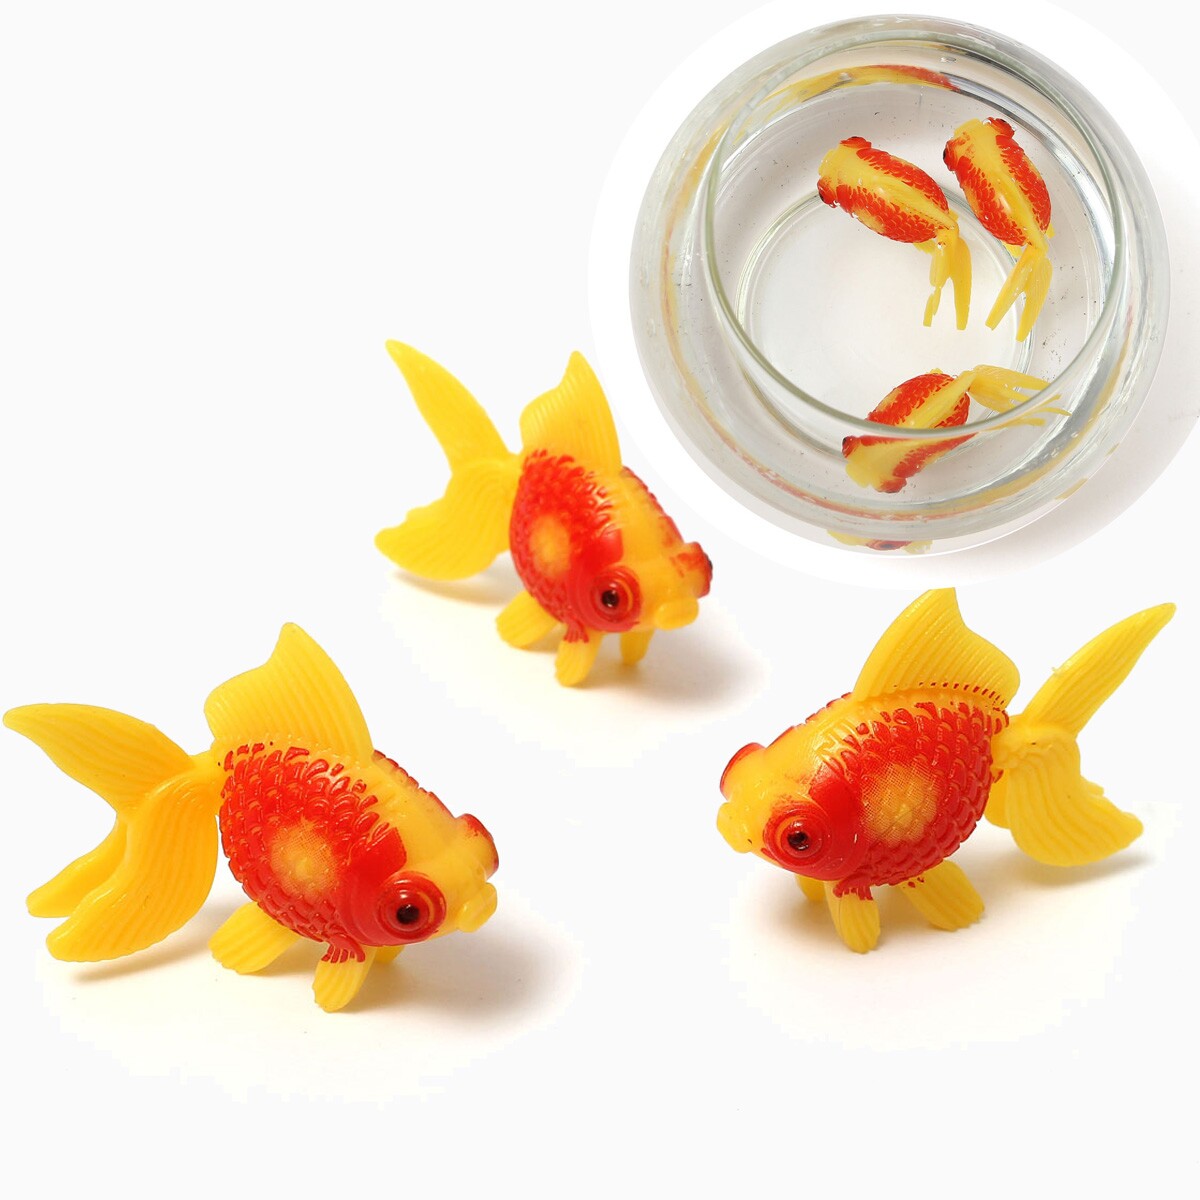 Nouveaute 3 pcs lot Natation Gold Fish Toy JAMAIS DOMMAGE pour le reservoir Aquarium Ornament Home Decor